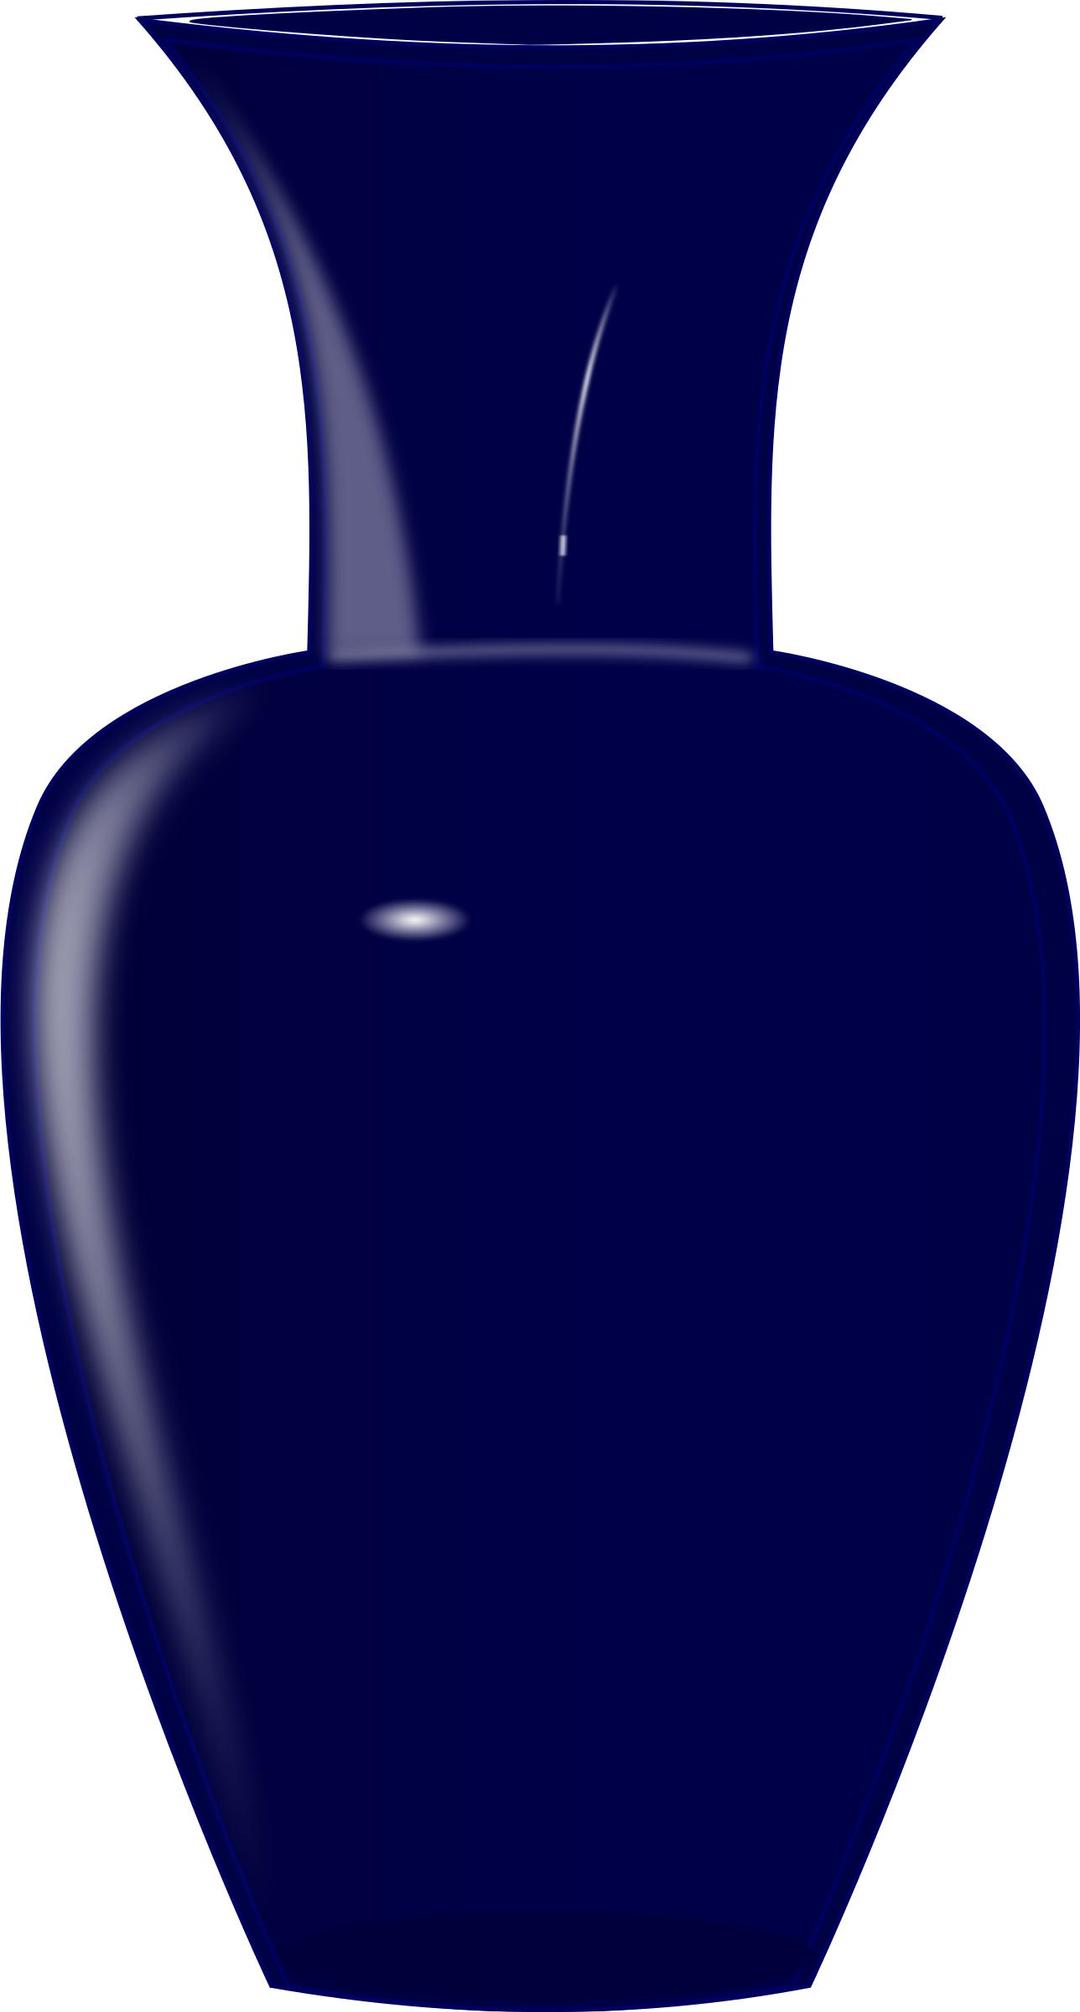 Blue glass vase png transparent